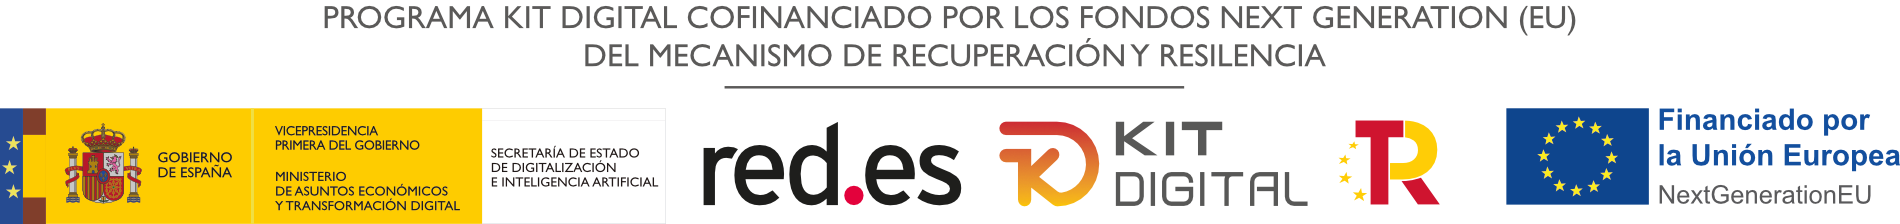 Gobierno de España, Red.es, Kit Digital, Financiado por la Unión Europea